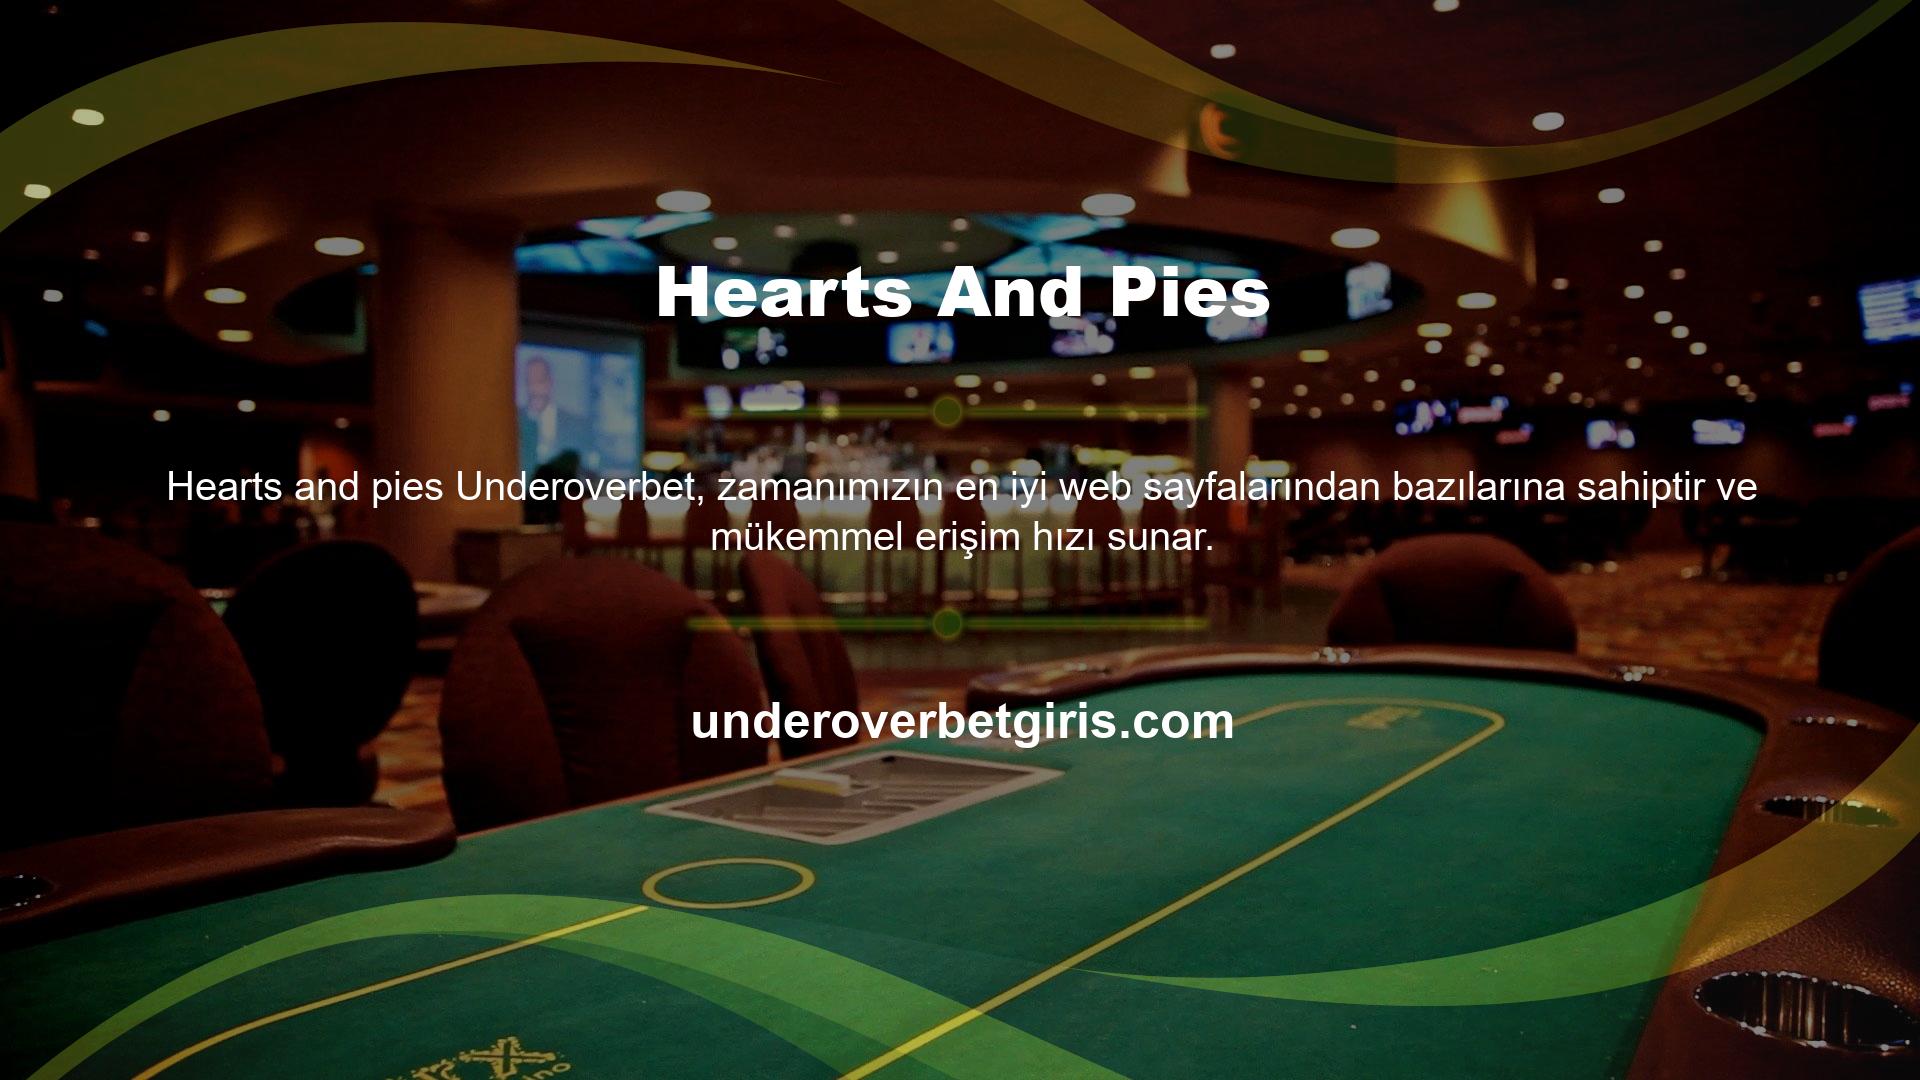 Canlı casino içeriğinin çoğunu sunan Underoverbet erişebilirsiniz